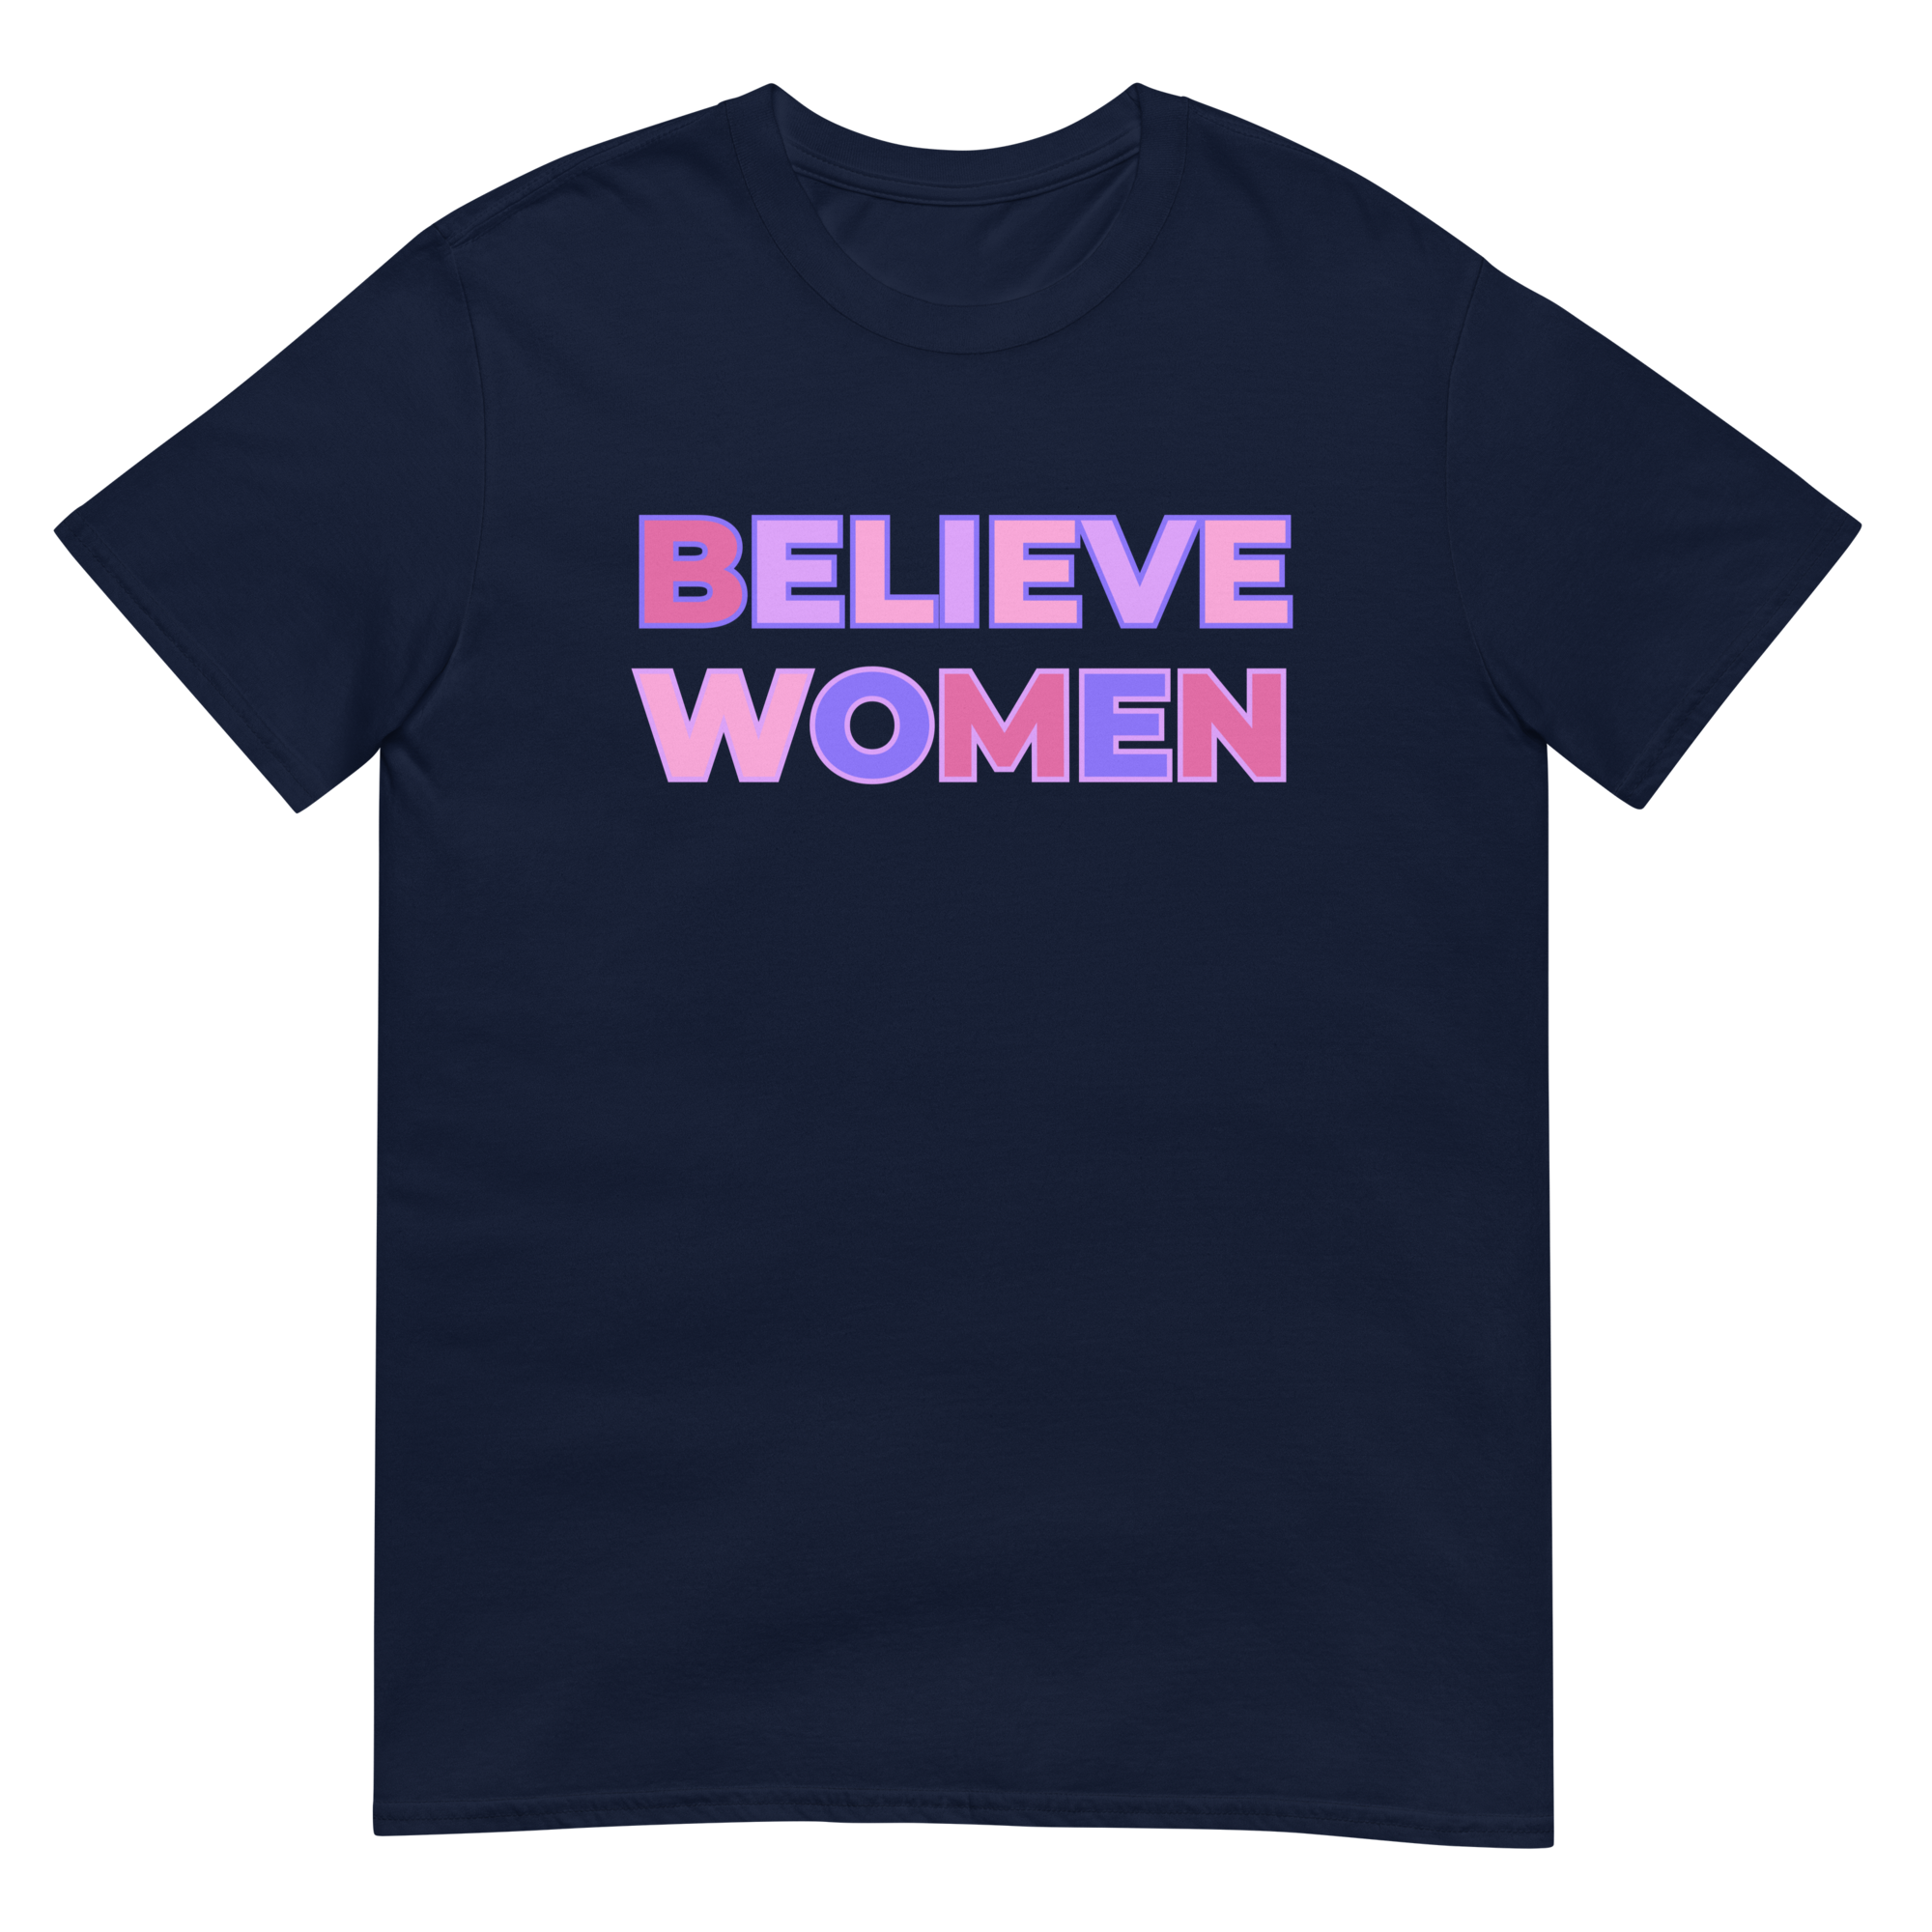 Believe Women Crew Neck Tee - Navy/Pink